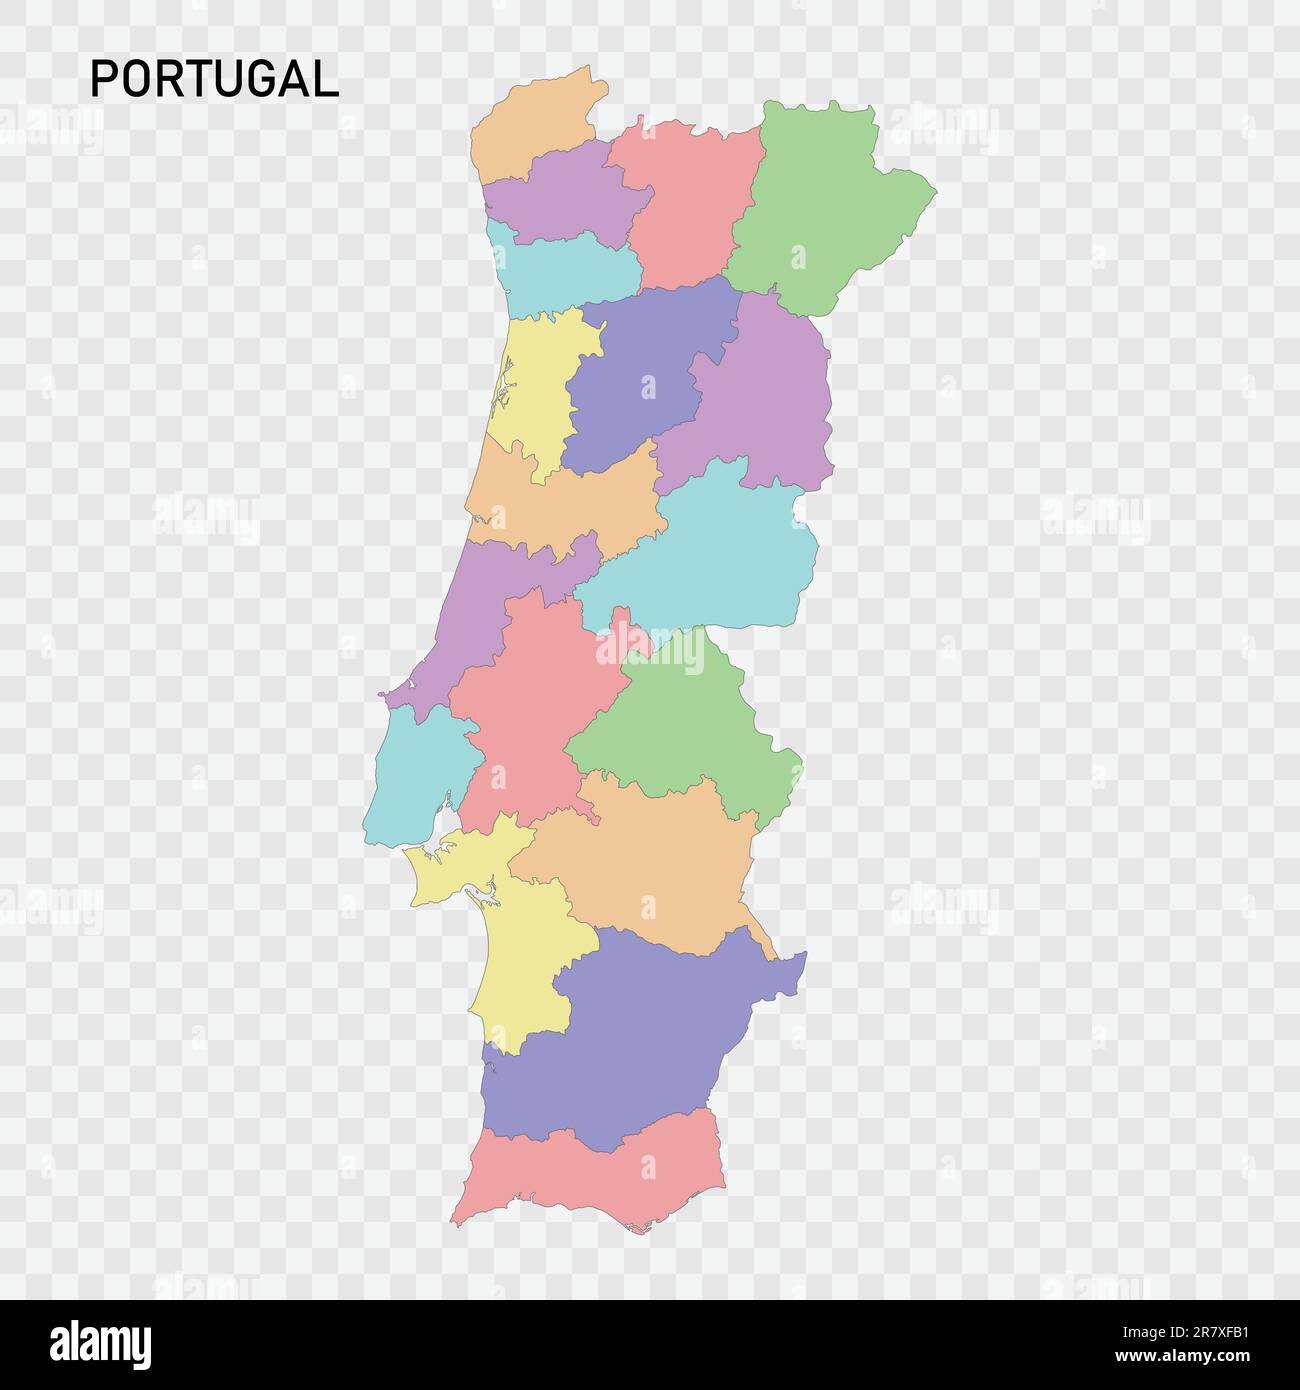 Premium Vector  Porto portugal city map in retro style. outline